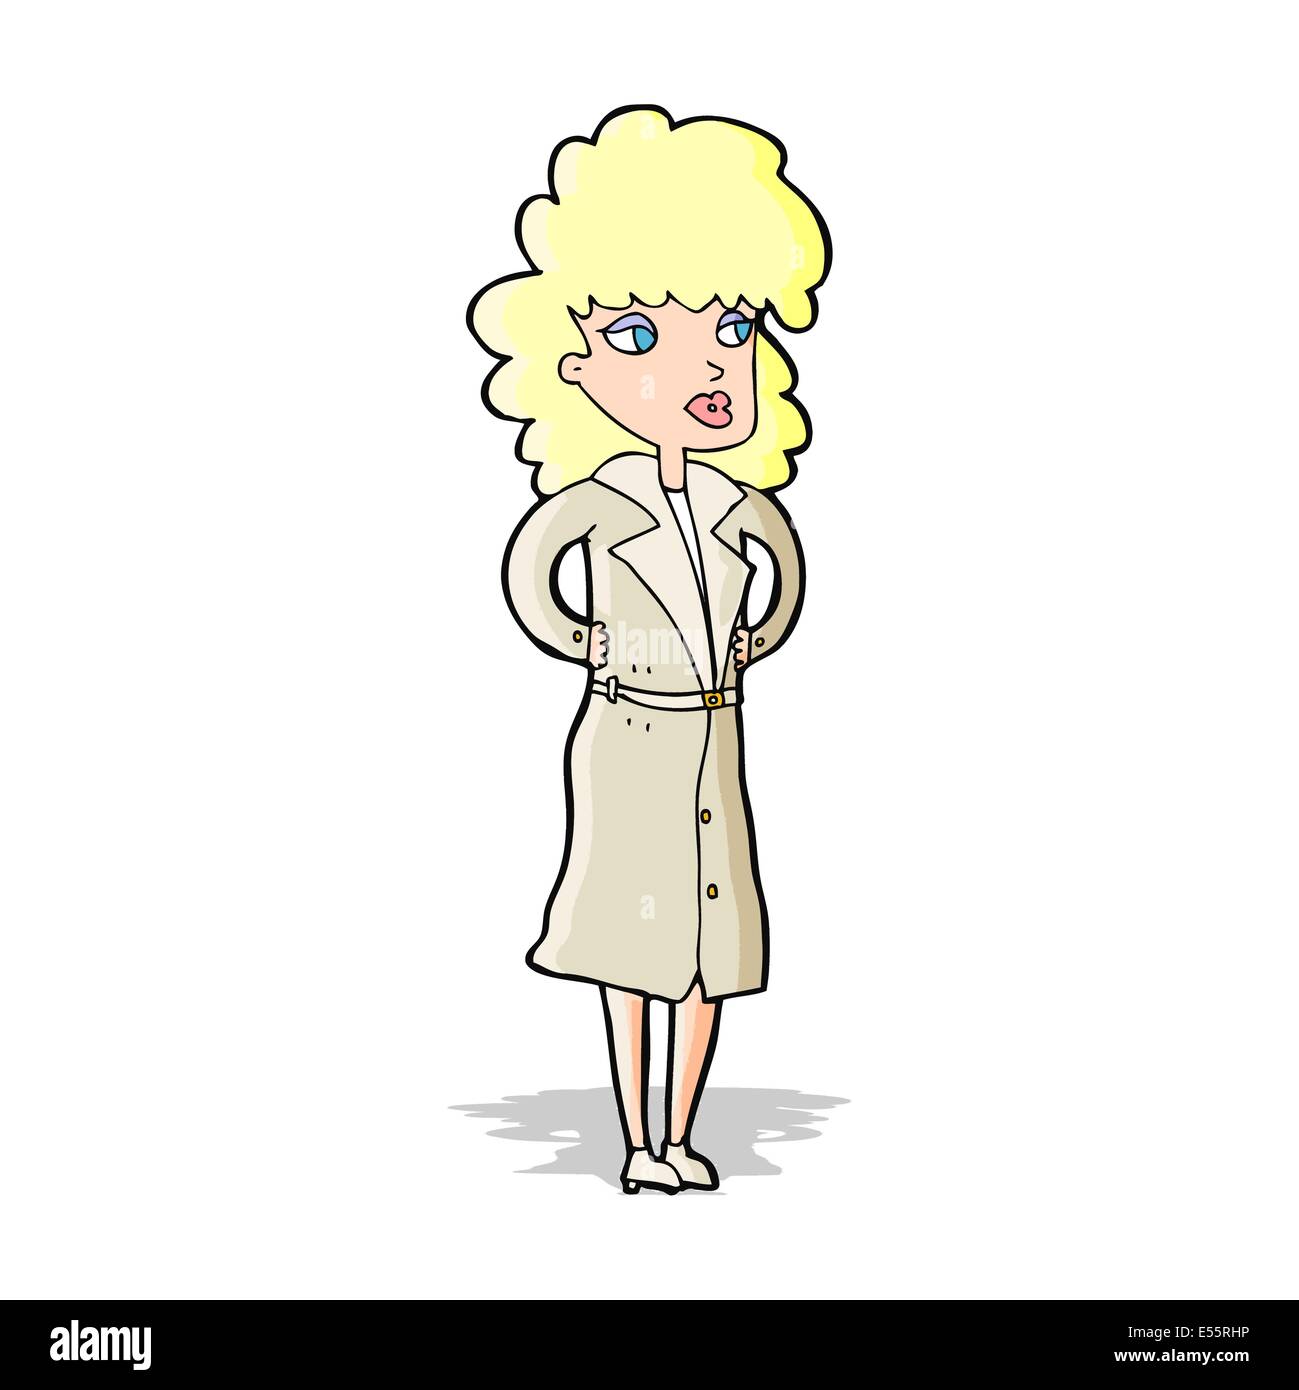 cartoon woman in trench coat Stock Vector Image & Art - Alamy